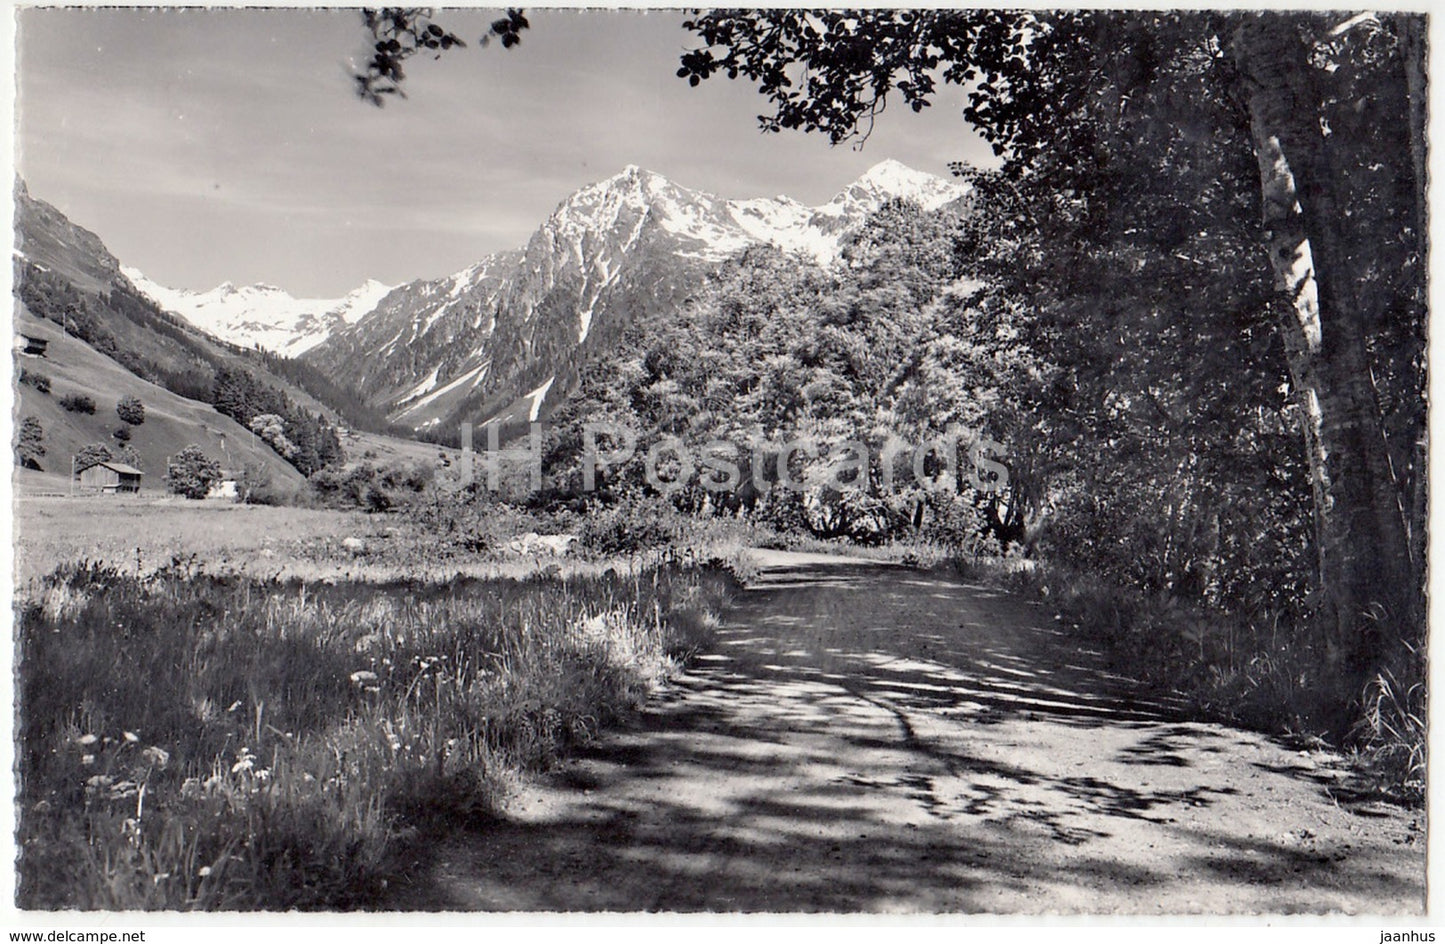 Klosters (Graubunden) 1250 m - Diethelmpromenade mit Silvrettagruppe - 58 - Switzerland - old postcards - unused - JH Postcards